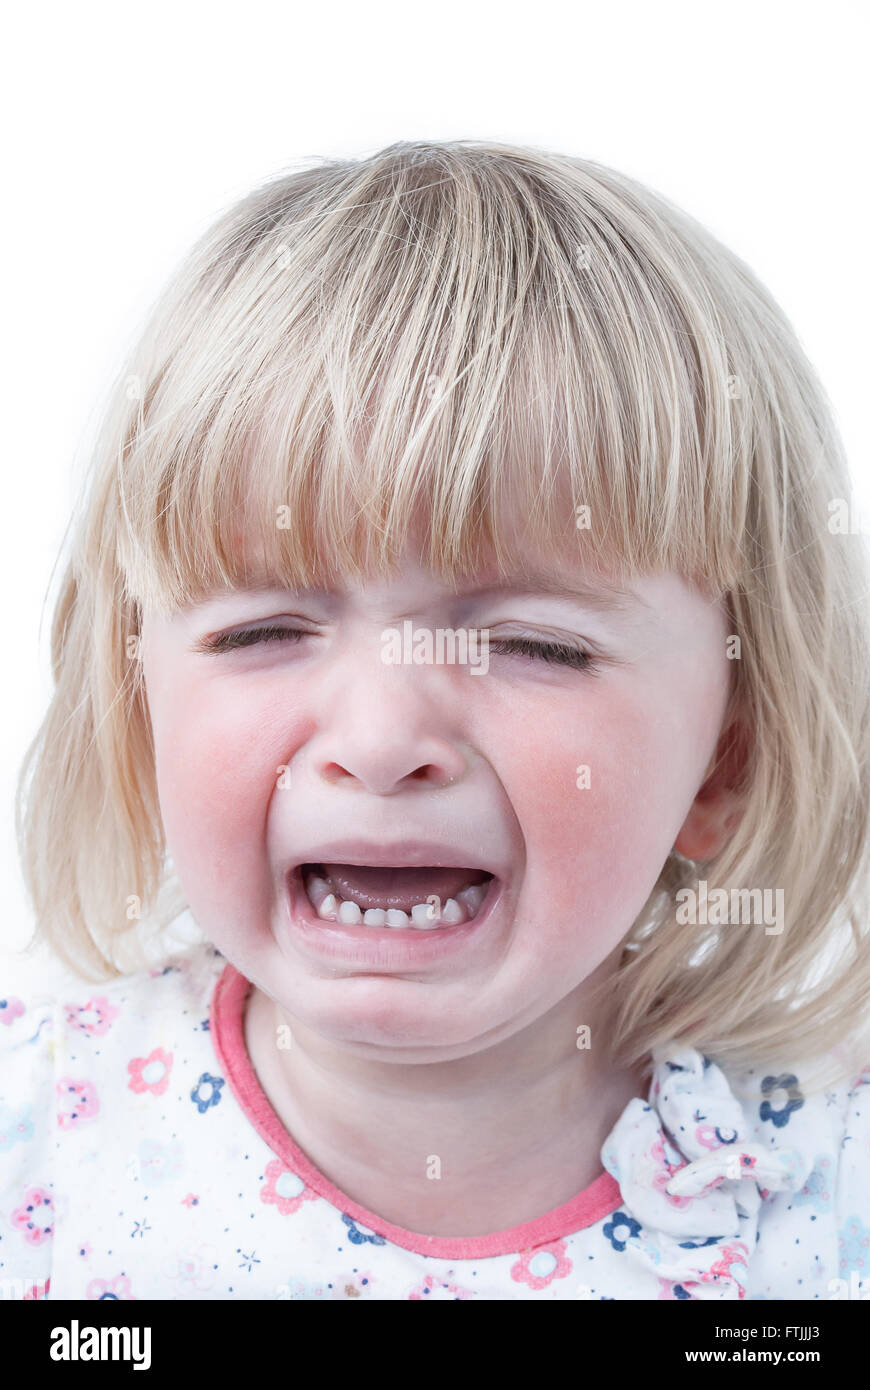 Un bébé fille de dentition avec gonflement des joues rouges. Banque D'Images